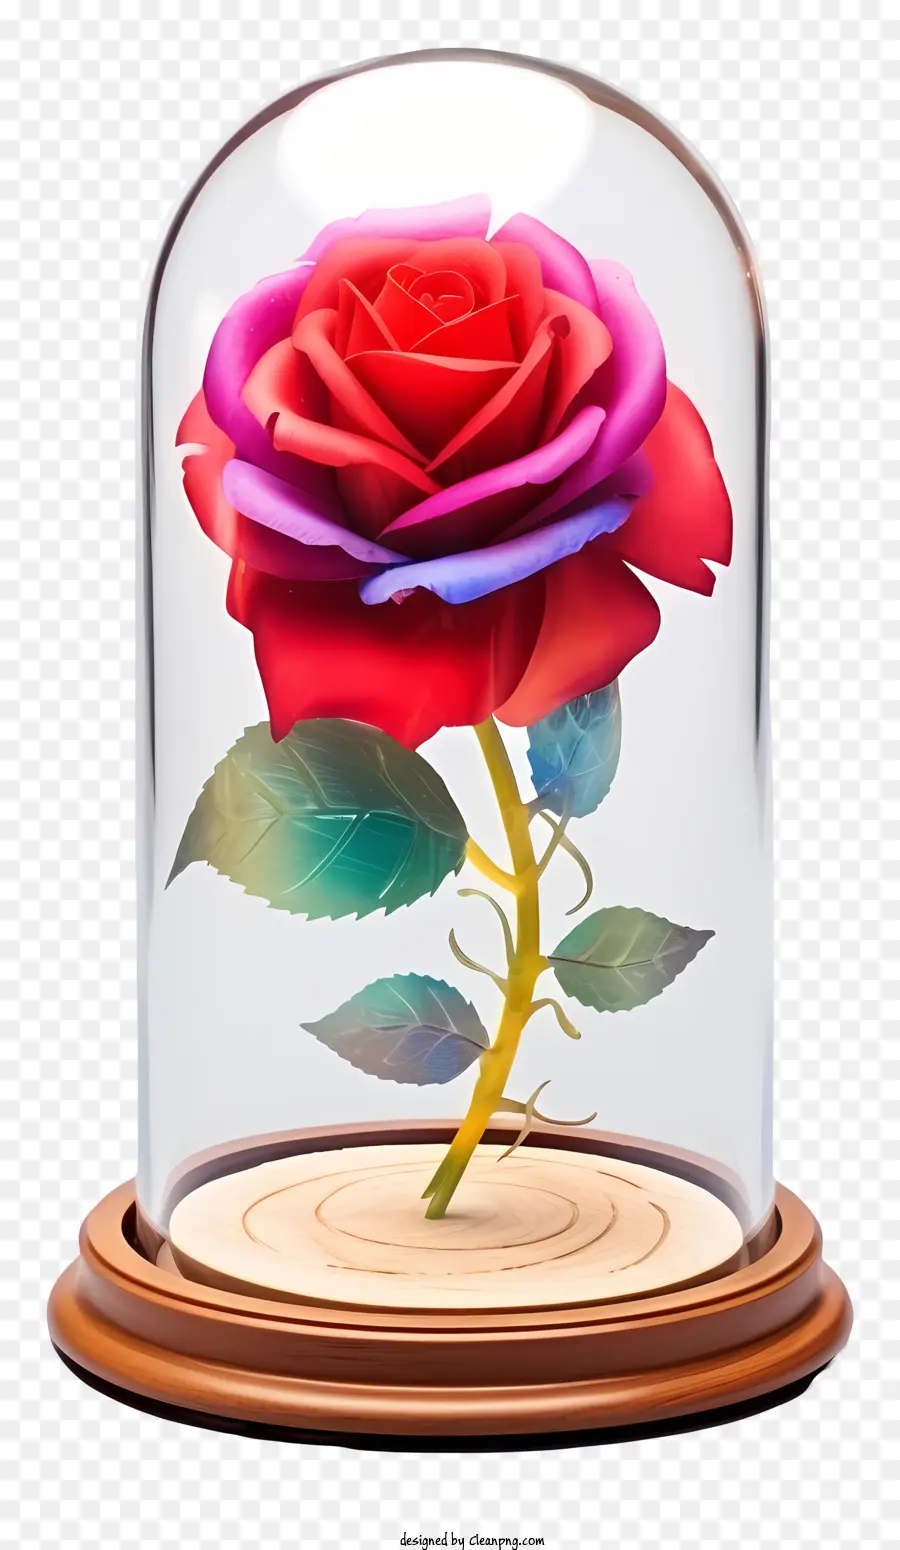 hoa hồng màu hồng - Hoa hồng hồng trong vòm thủy tinh, phát sáng và thật